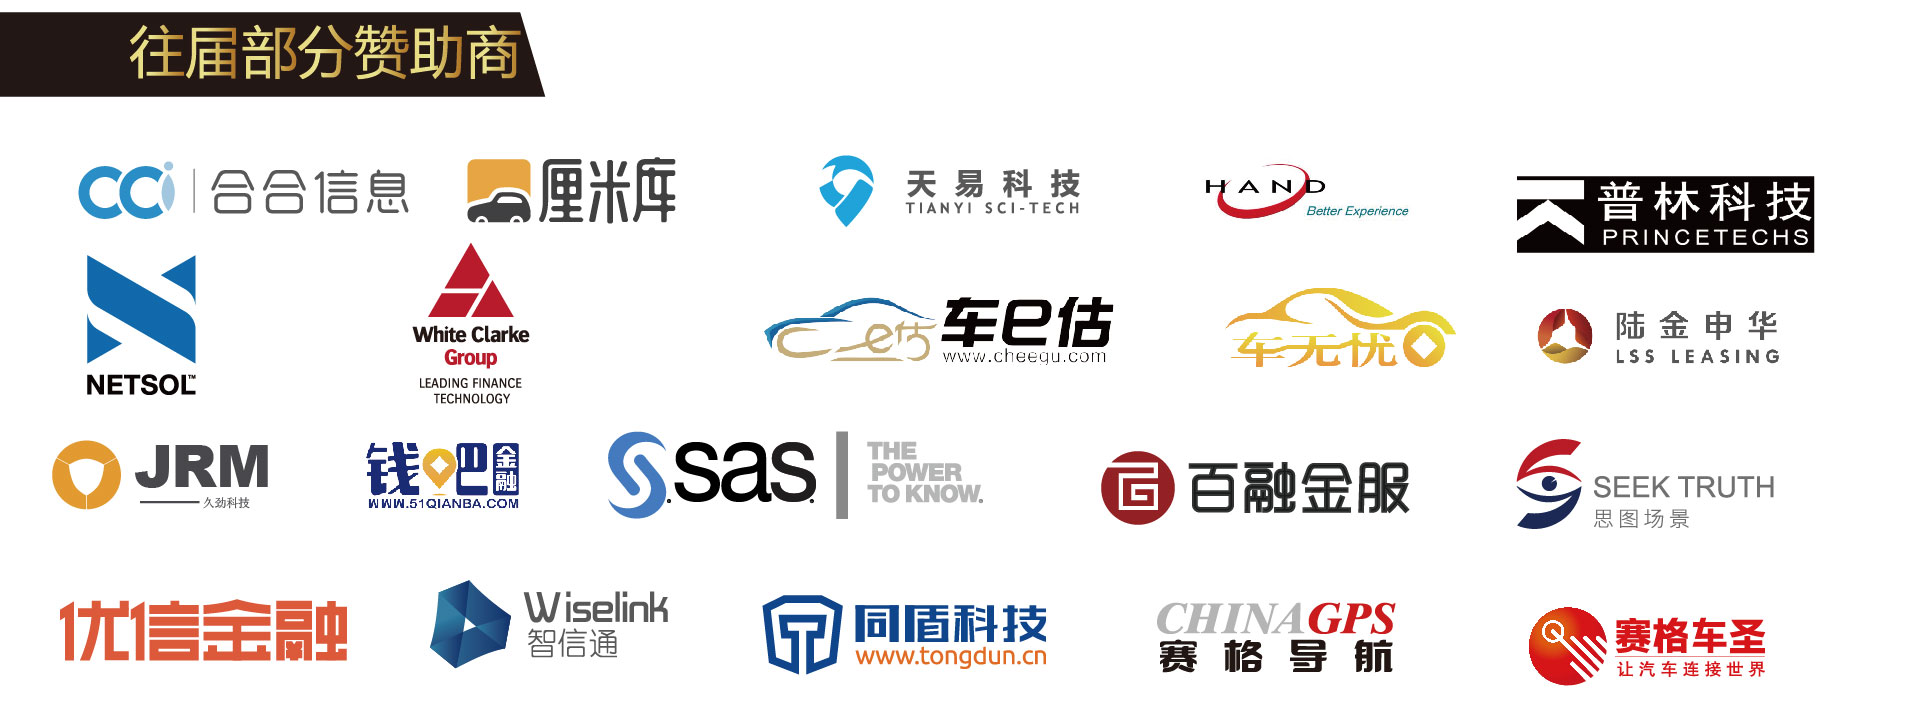 2018第三届中国汽车金融国际峰会